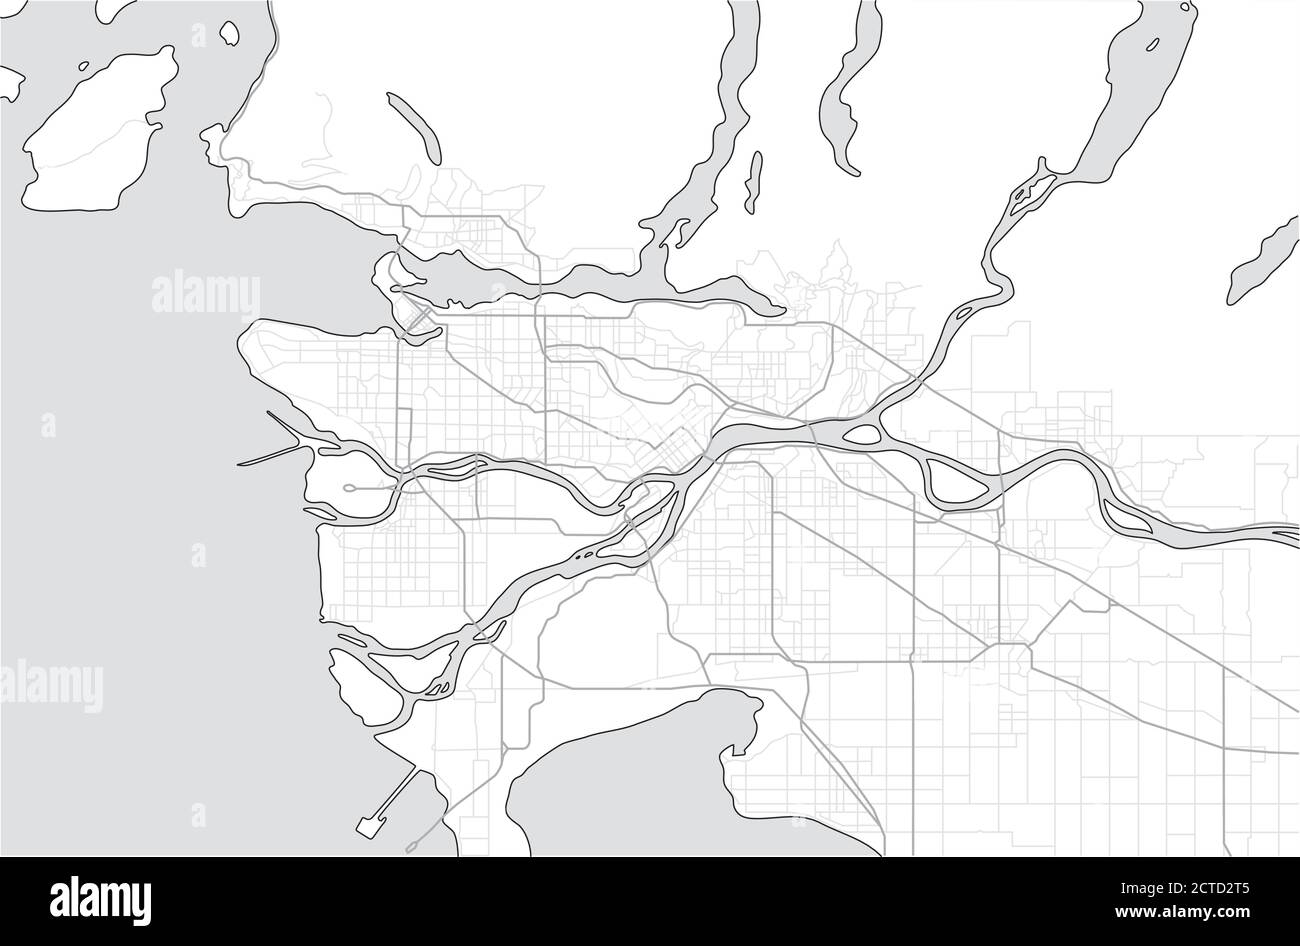 Carte et municipalités du Grand Vancouver, Colombie-Britannique, Canada. Carte touristique ou guide du Metro Vancouver BC. Une carte d'échelle de gris simple sans texte. Illustration de Vecteur